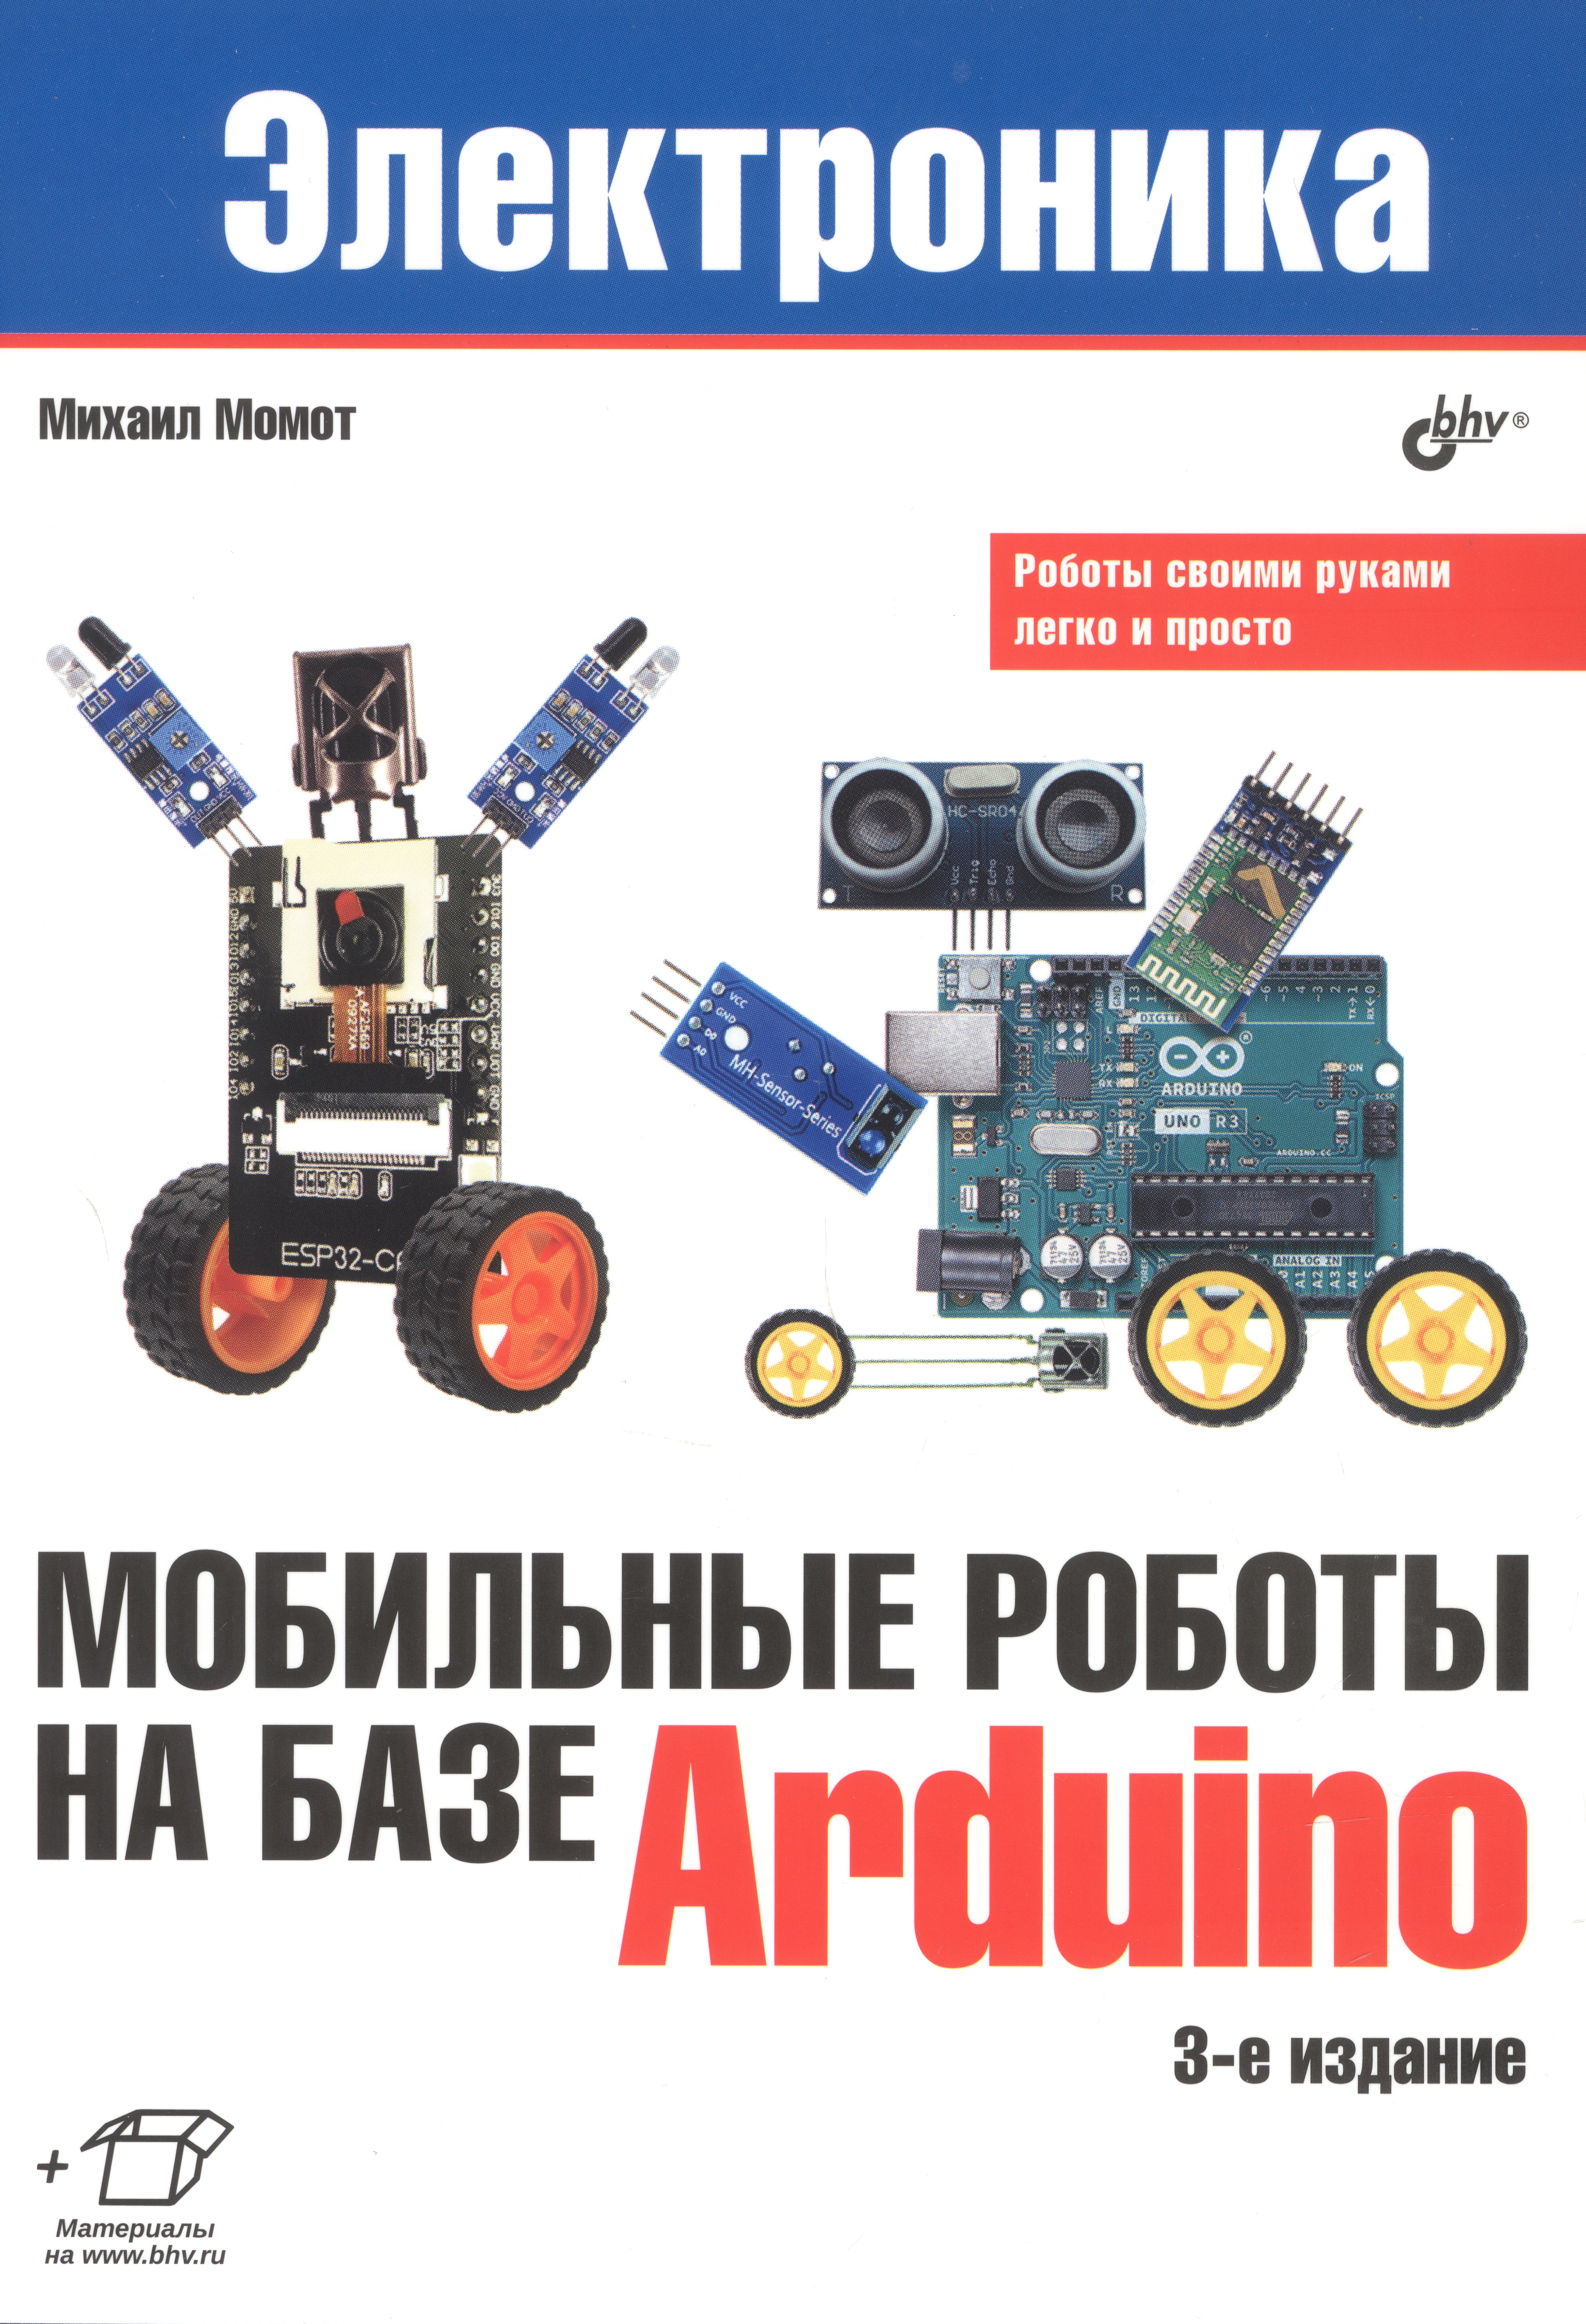 момот м мобильные роботы на базе esp32 в среде arduino ide Мобильные роботы на базе Arduino. 3-е издание